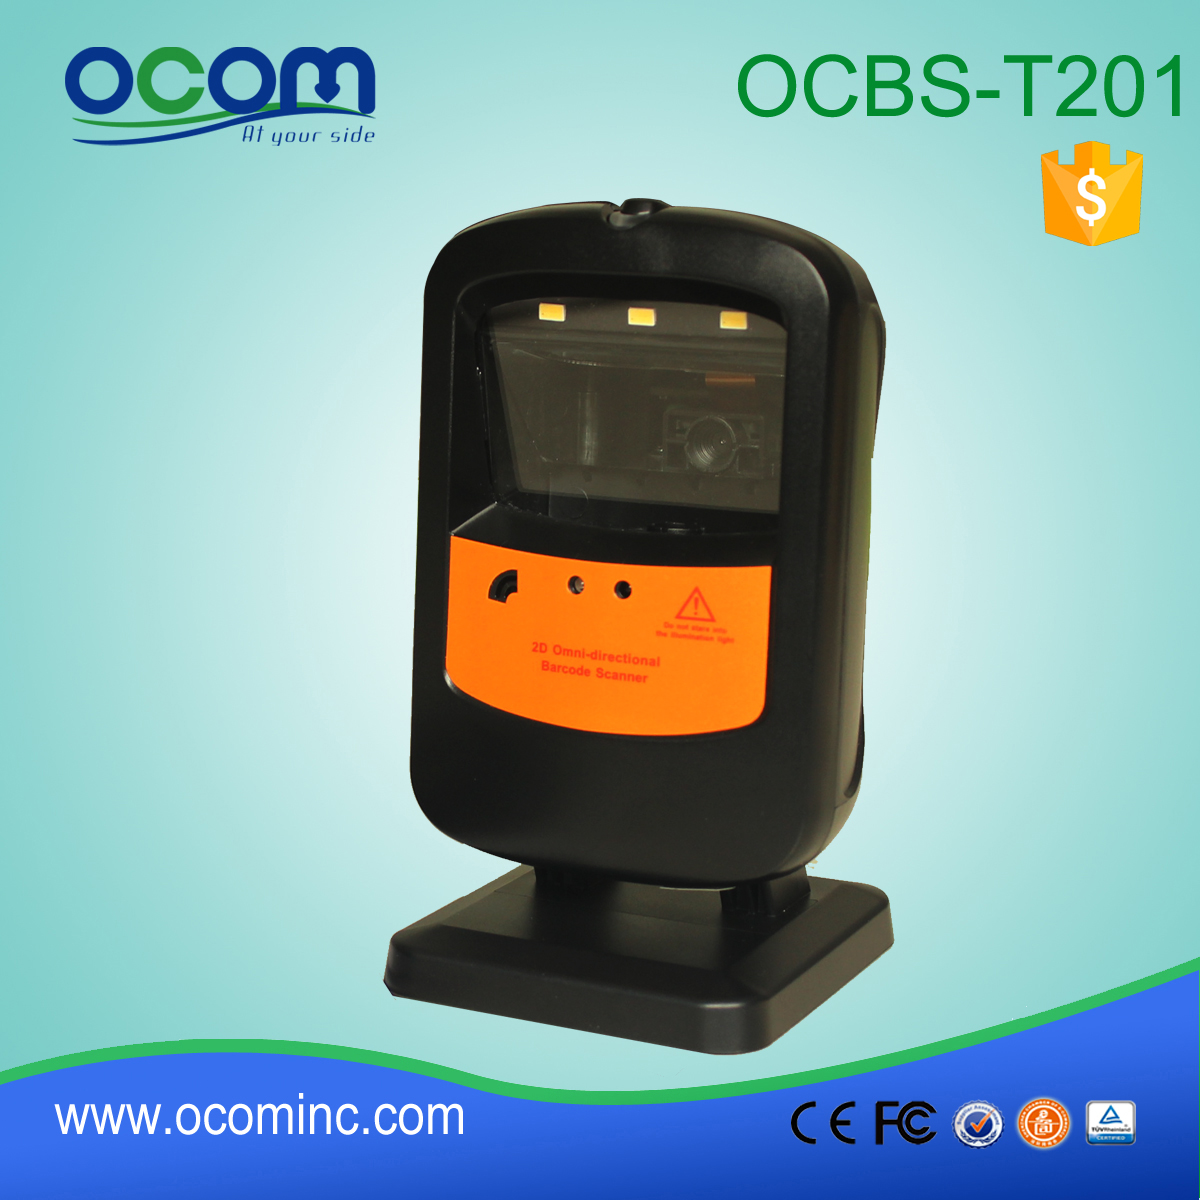 OCBS-T201: omnidirectionnelle machine à scanner de codes barres, de pièces de lecteur de codes barres